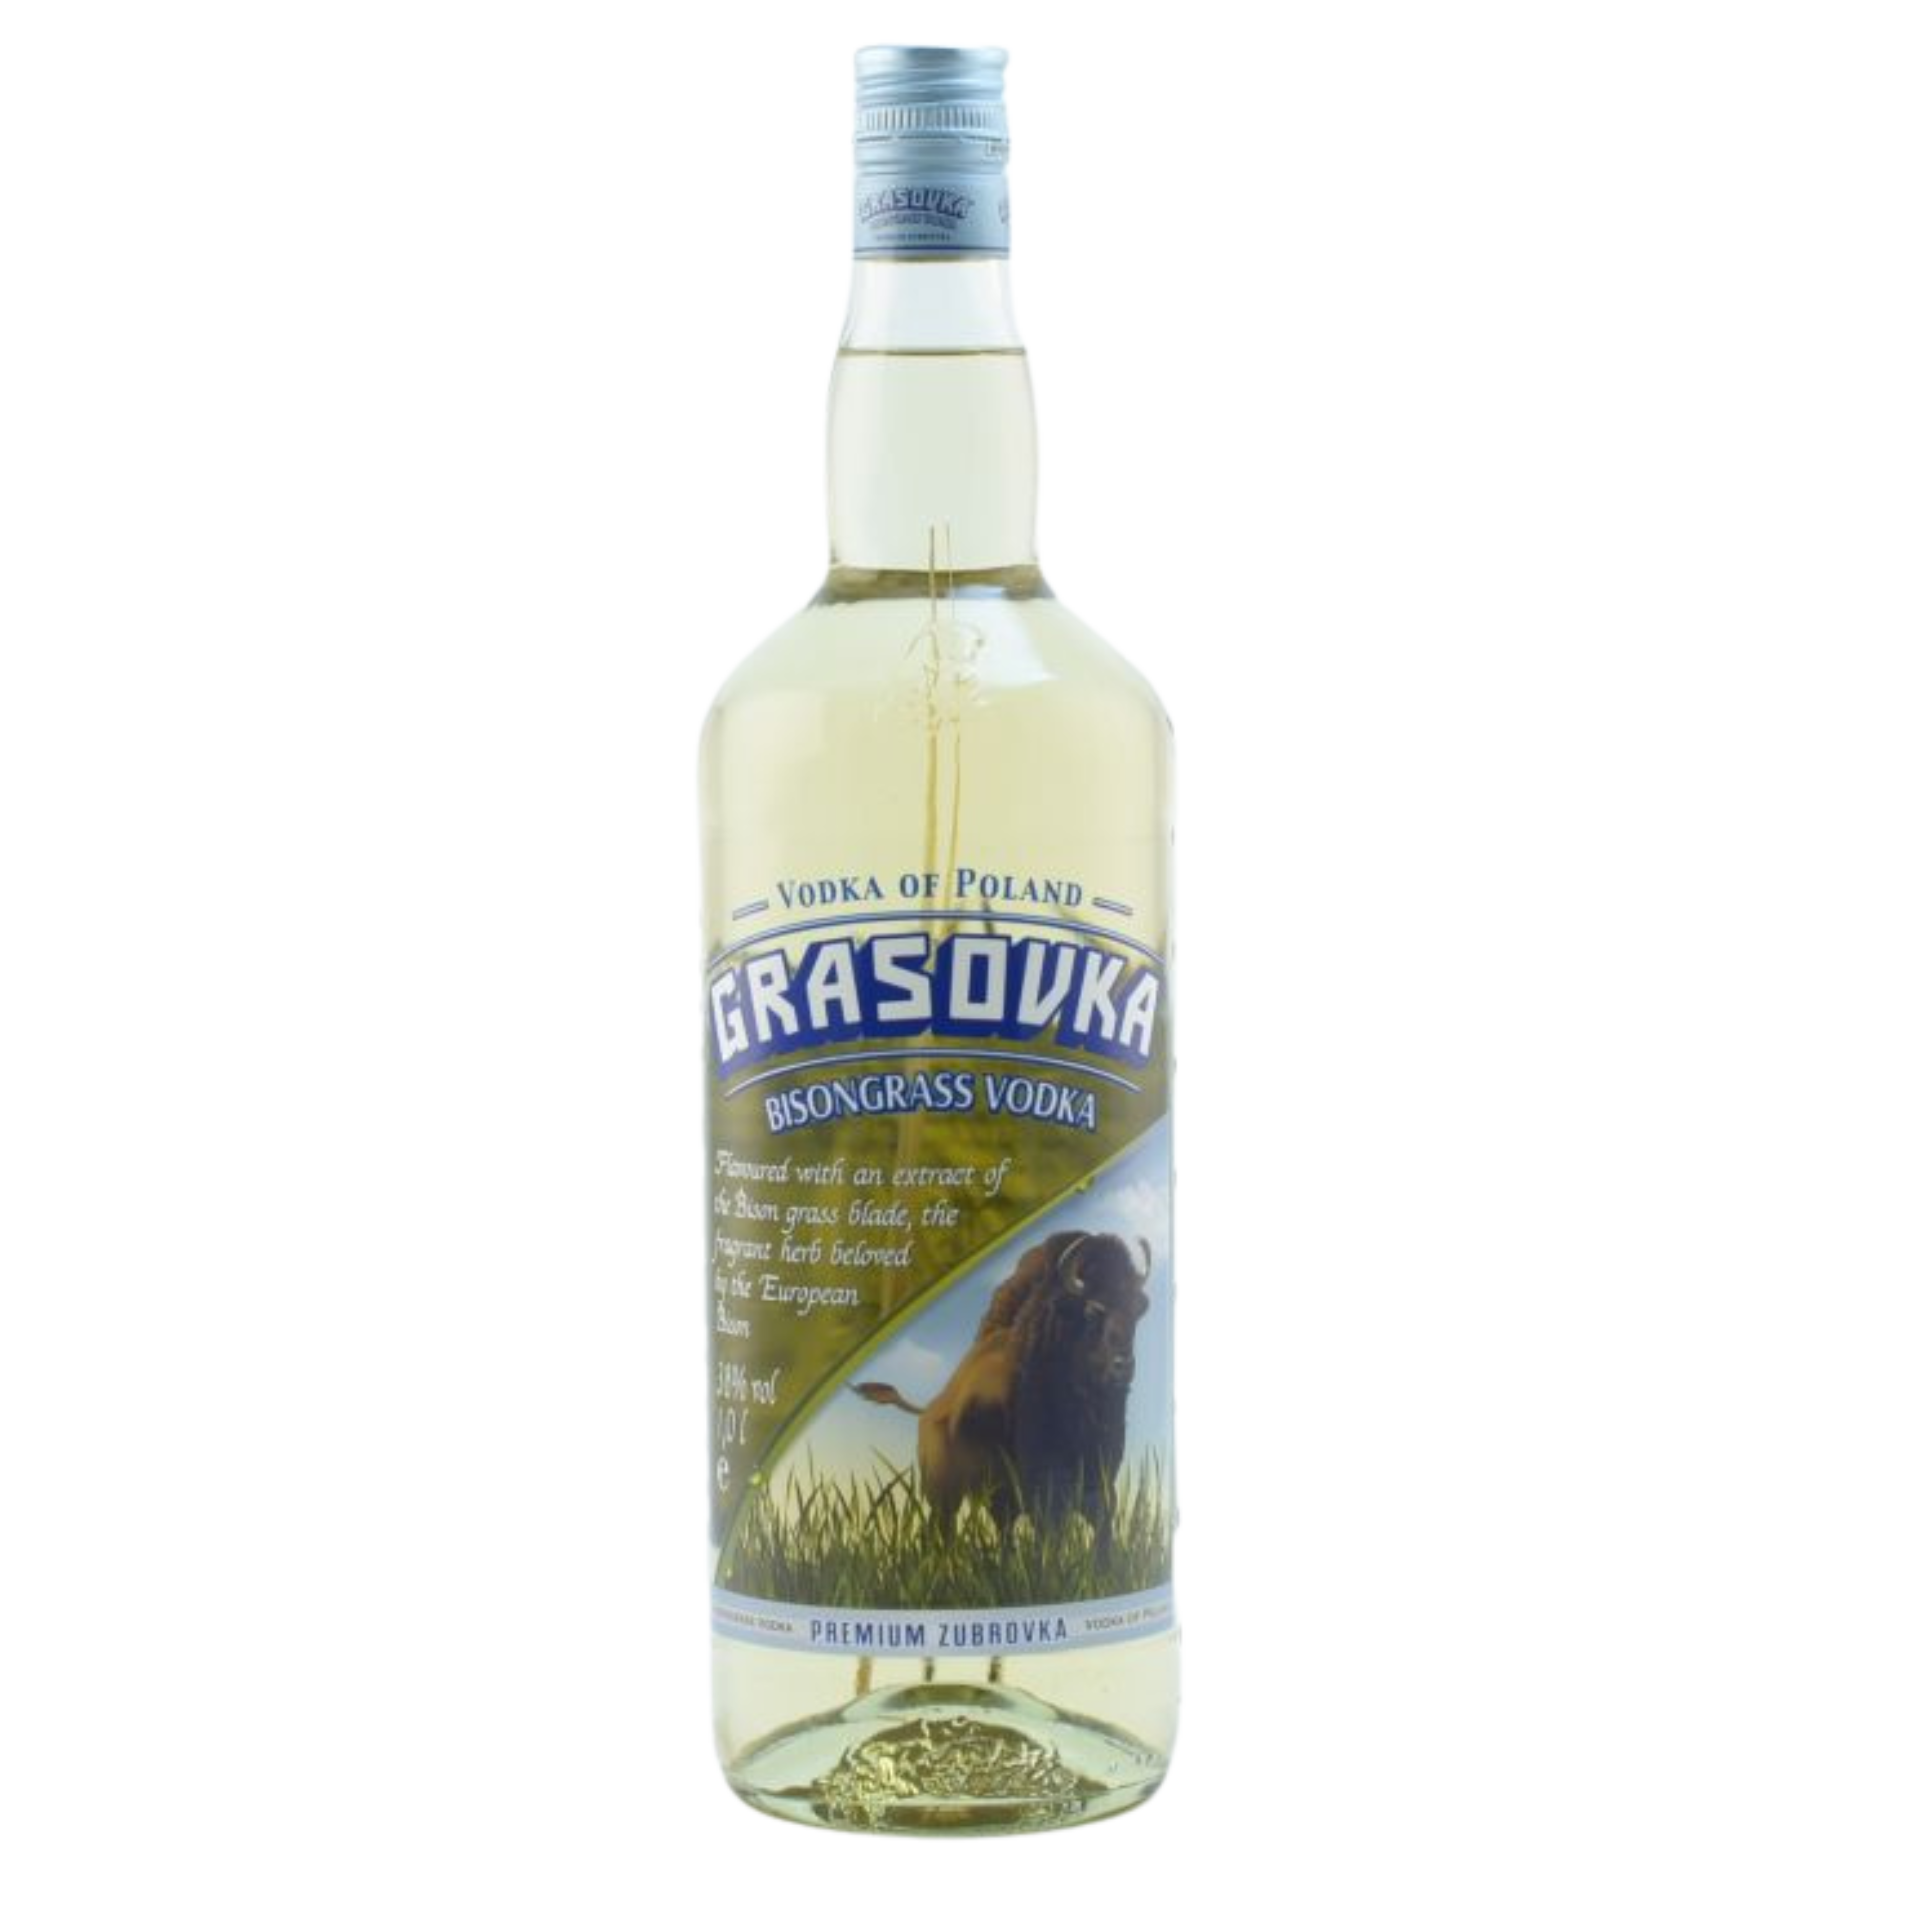 Grasovka Bison Vodka 38% 1,0l